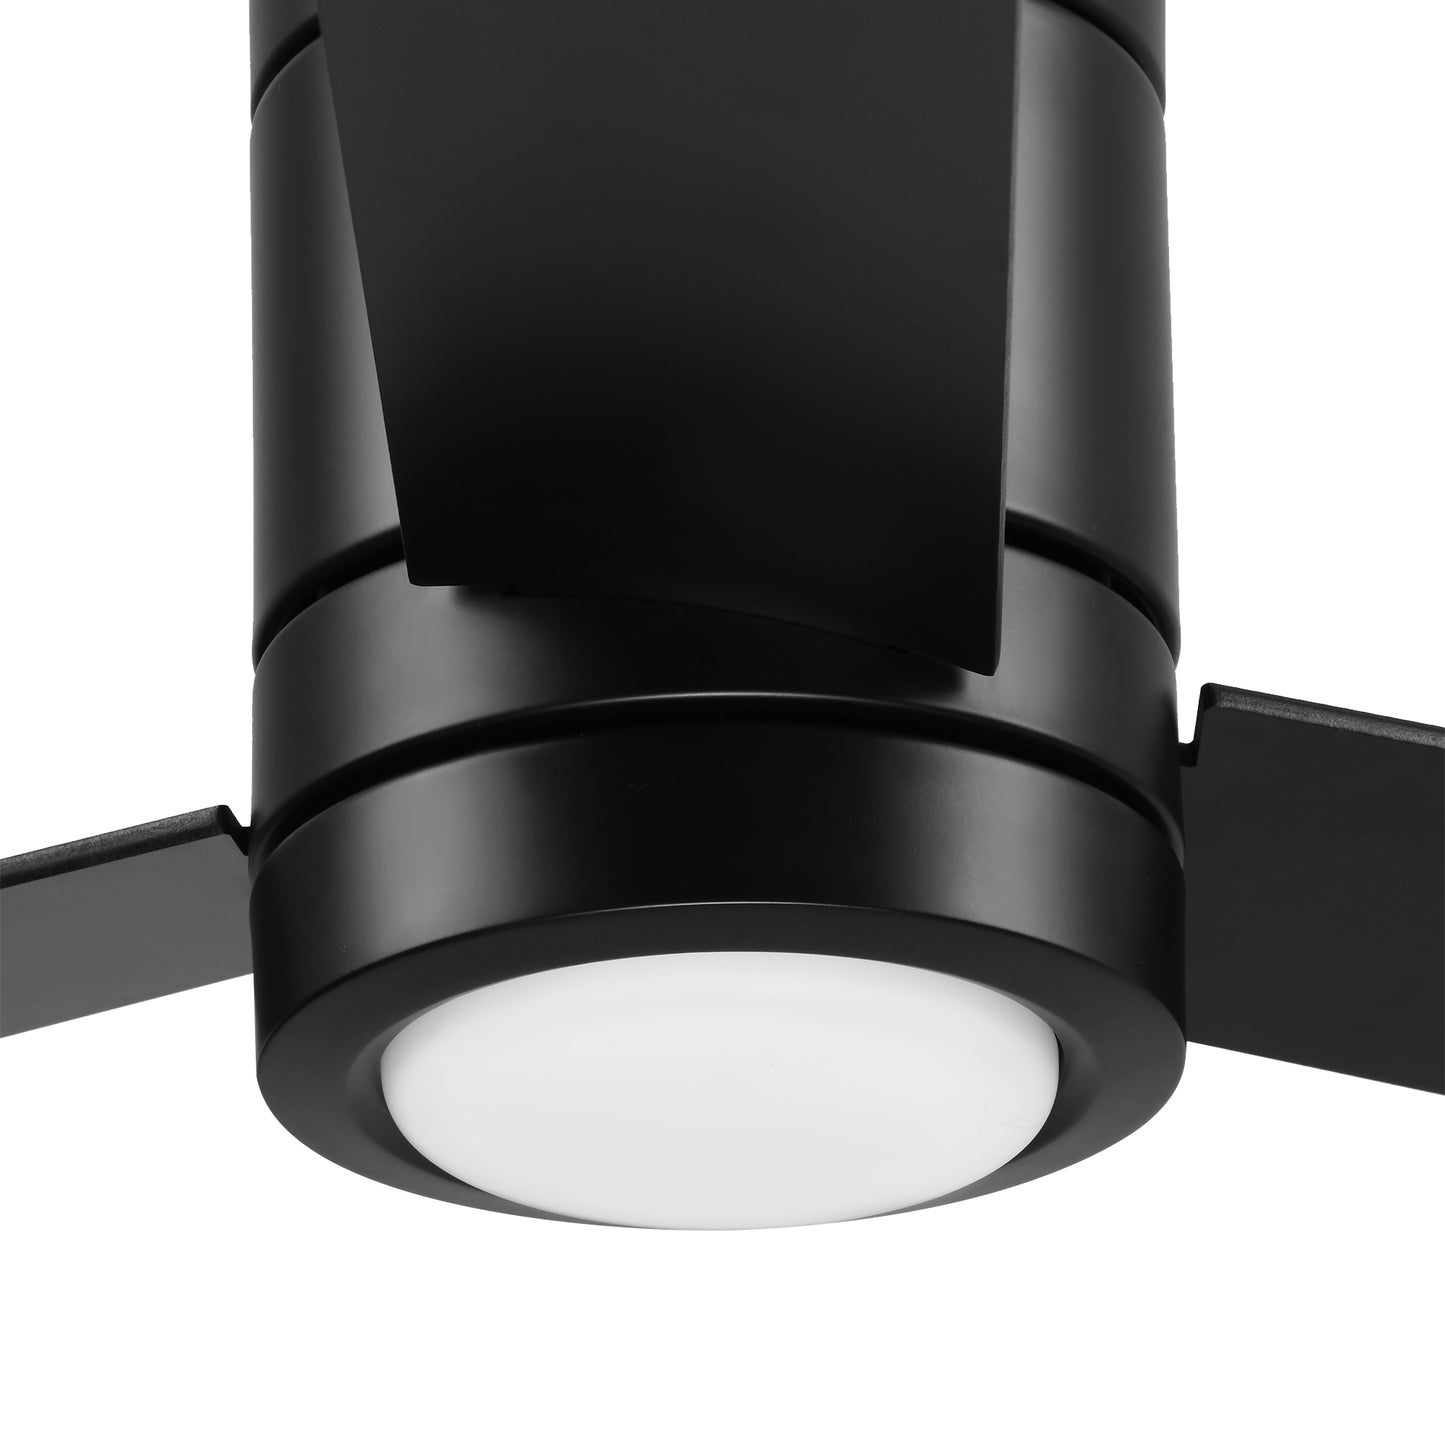 HOMCOM Ventilador de Techo Motor AC 48W con Luz LED Mando a Distancia 112 de Diámetro 3 Velocidades Temporizador 3 Aspas de Madera Silencioso para Dormitorio Salón Comedor Negro